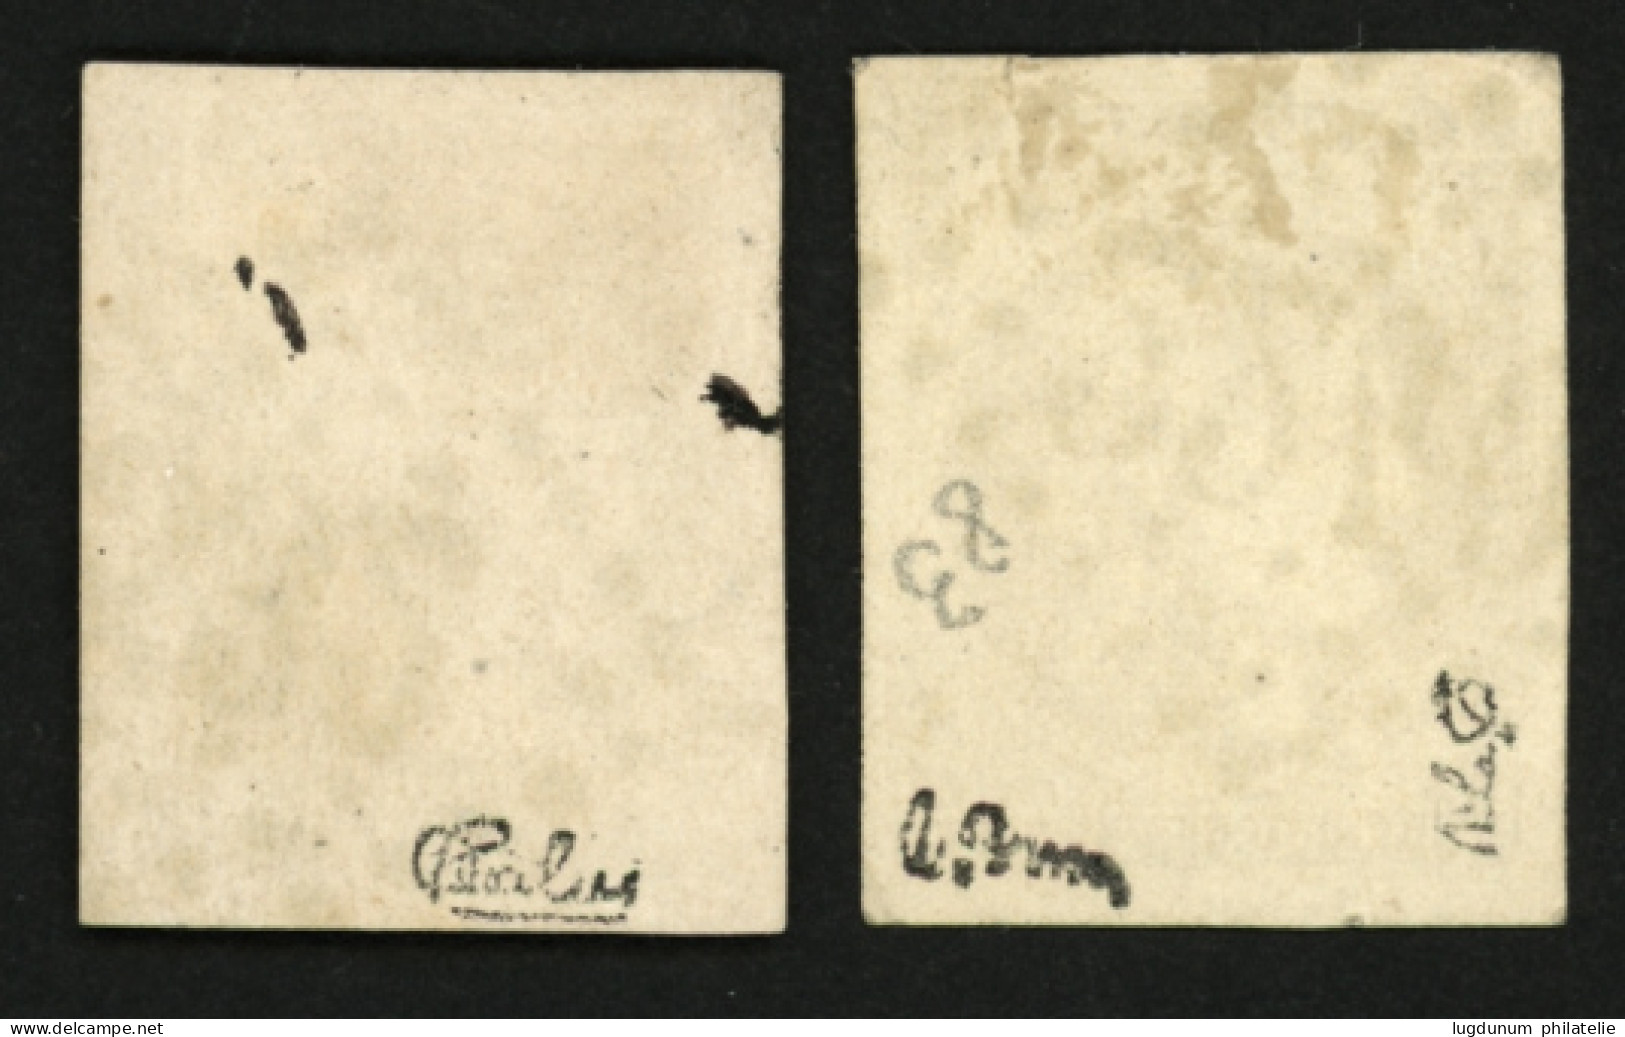 10c BORDEAUX (n°43) 2 Superbes Exemplaires Avec Nuances Différentes. Signé CALVES Et BRUN. TTB. - 1870 Emission De Bordeaux